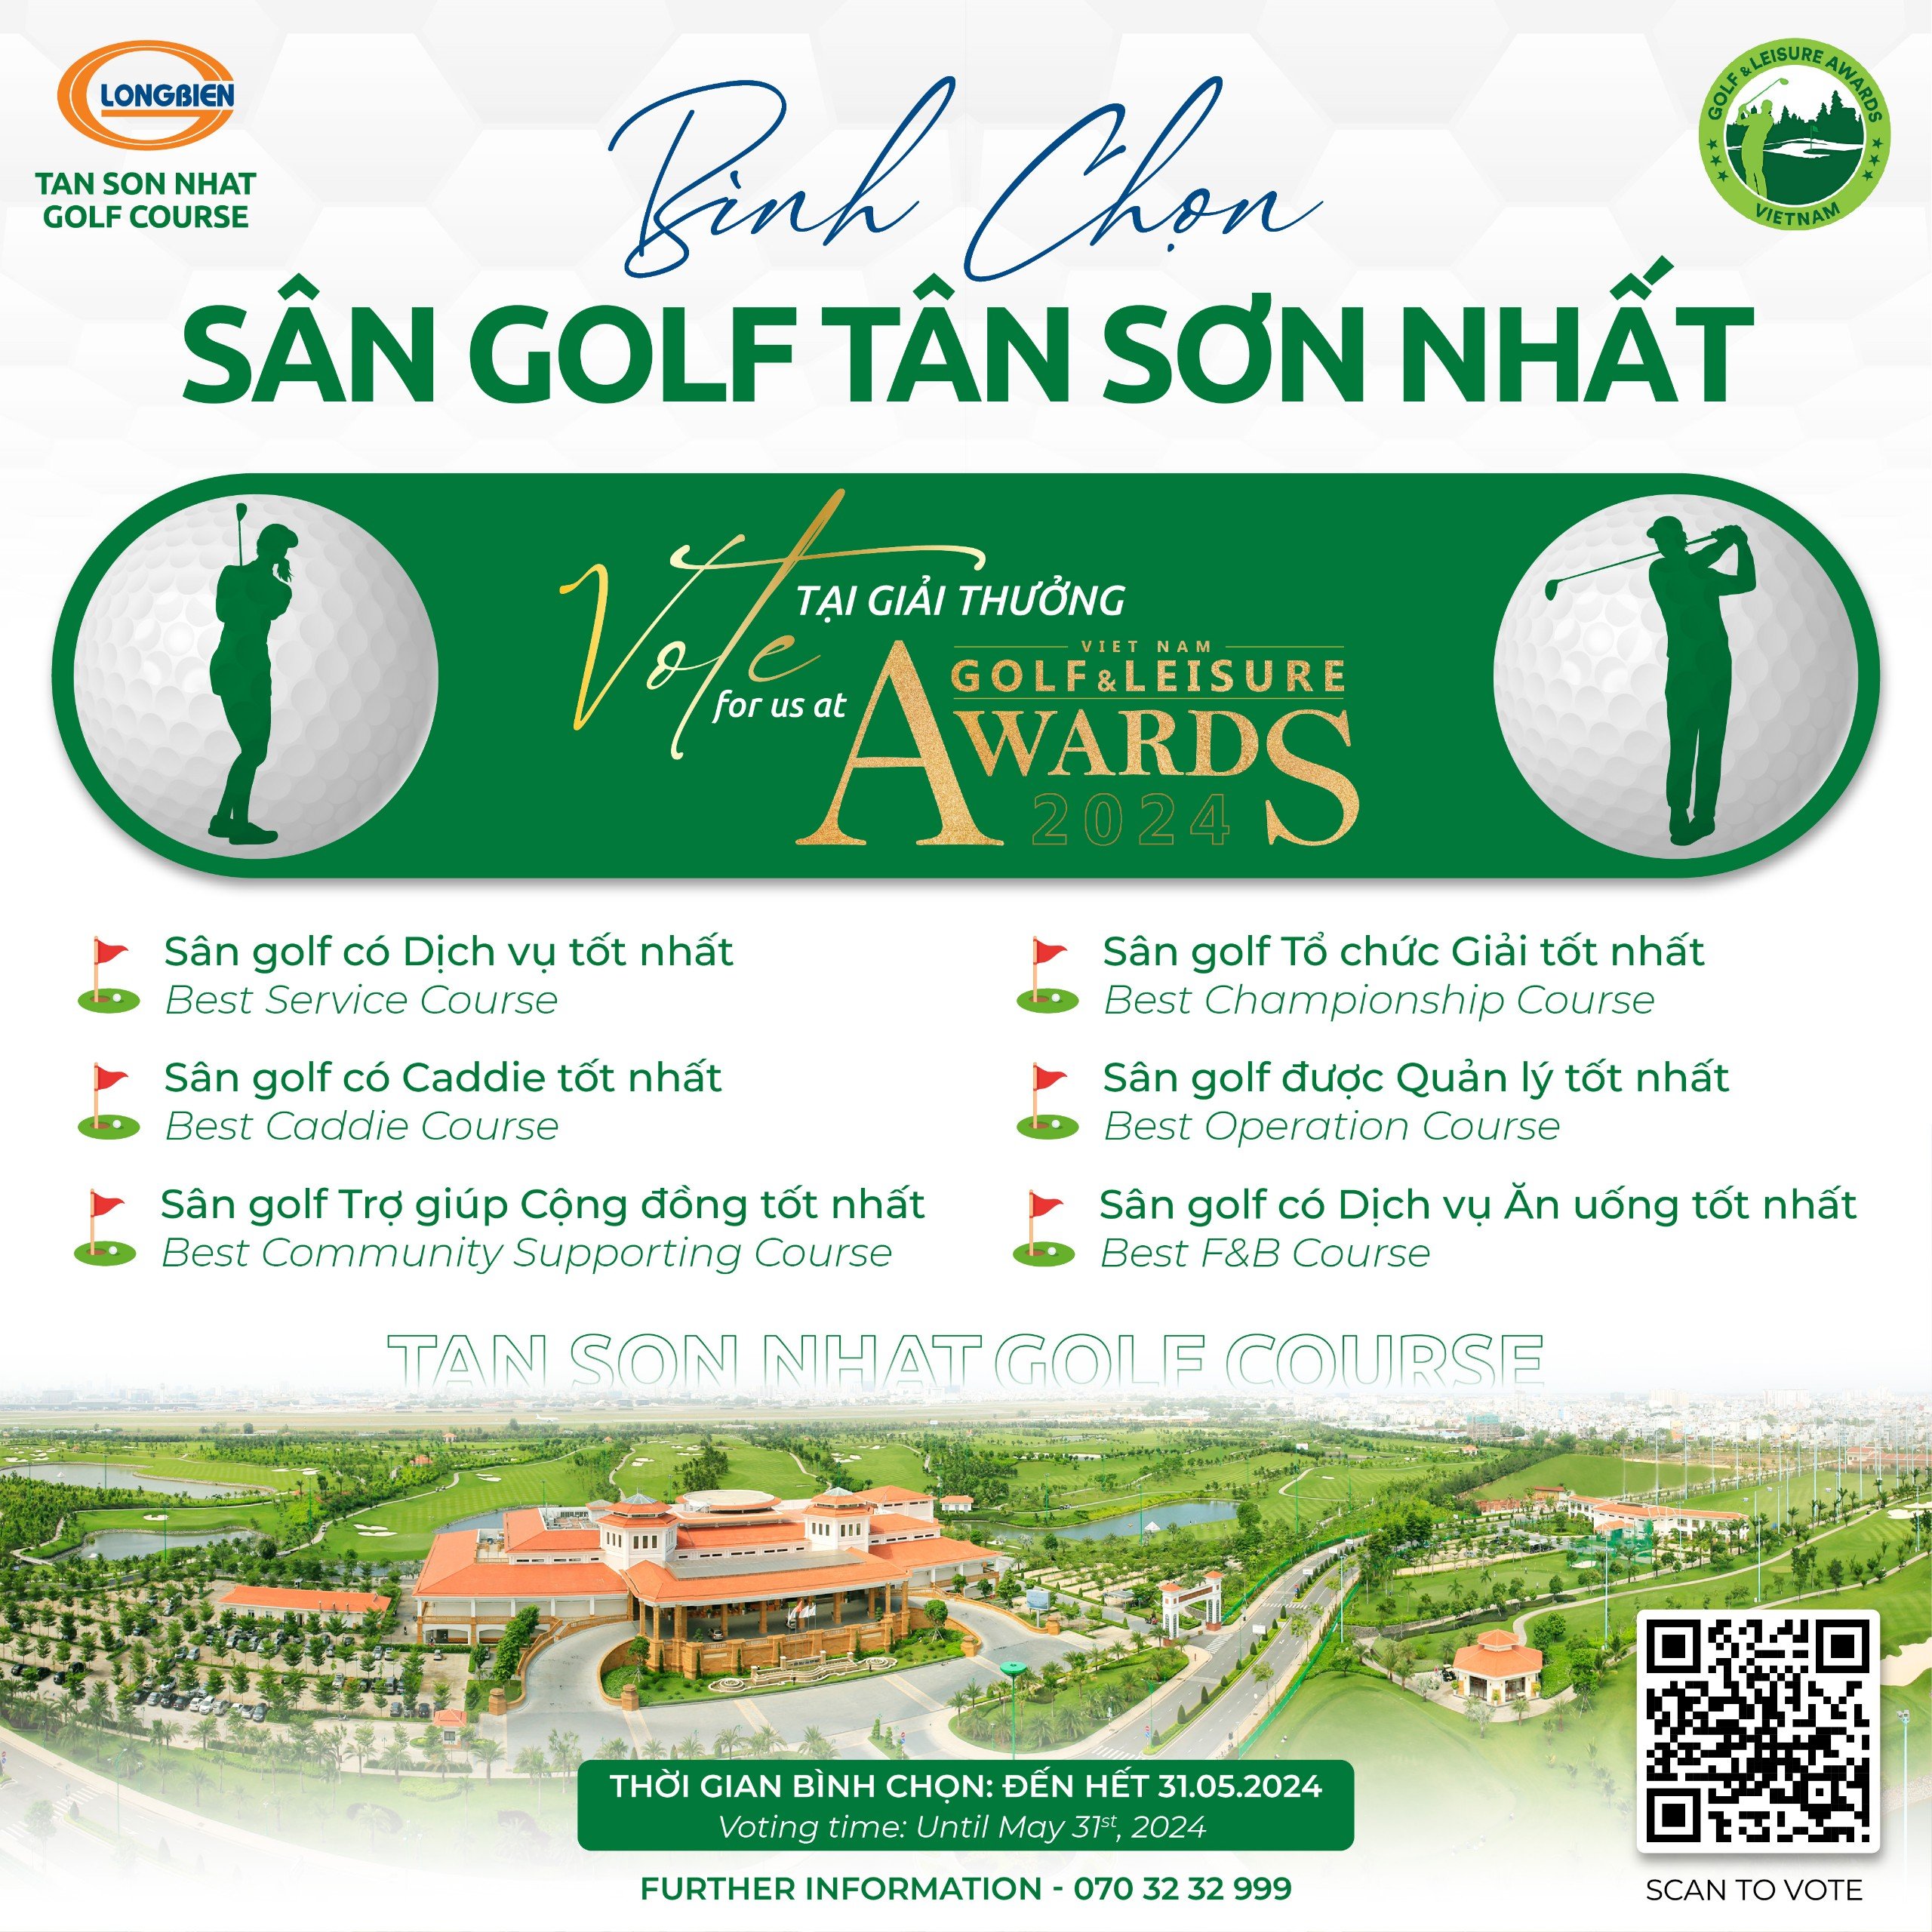 Bình Chọn Sân Golf Tân Sơn Nhất Tại Golf & Leisure Awards 2024 